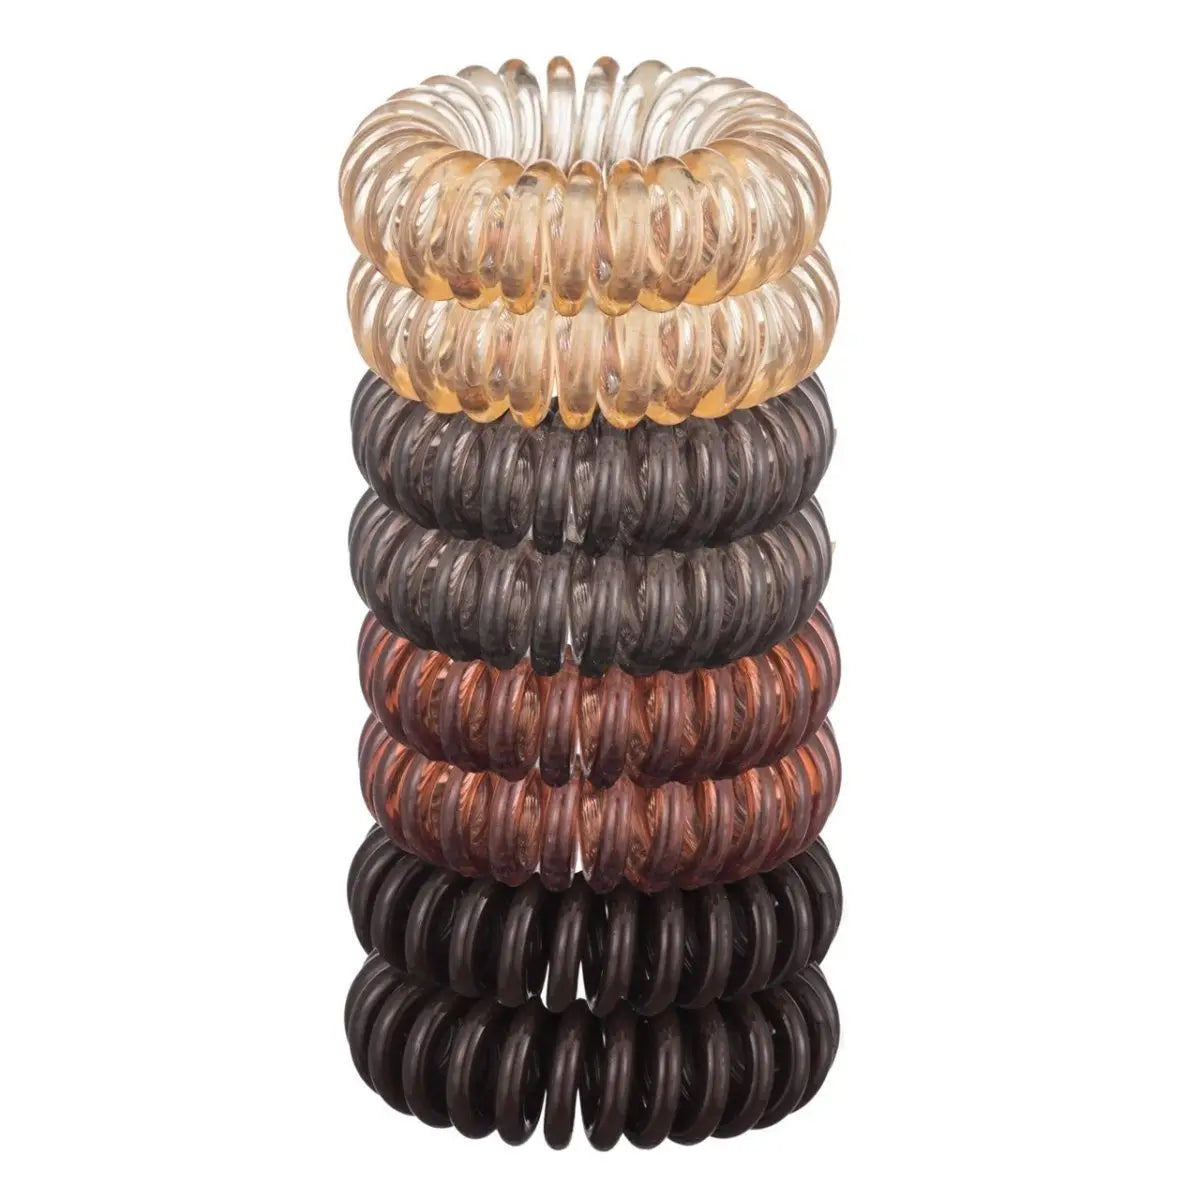 Kitsch Spiral Hair Ties 8 Pack - Black